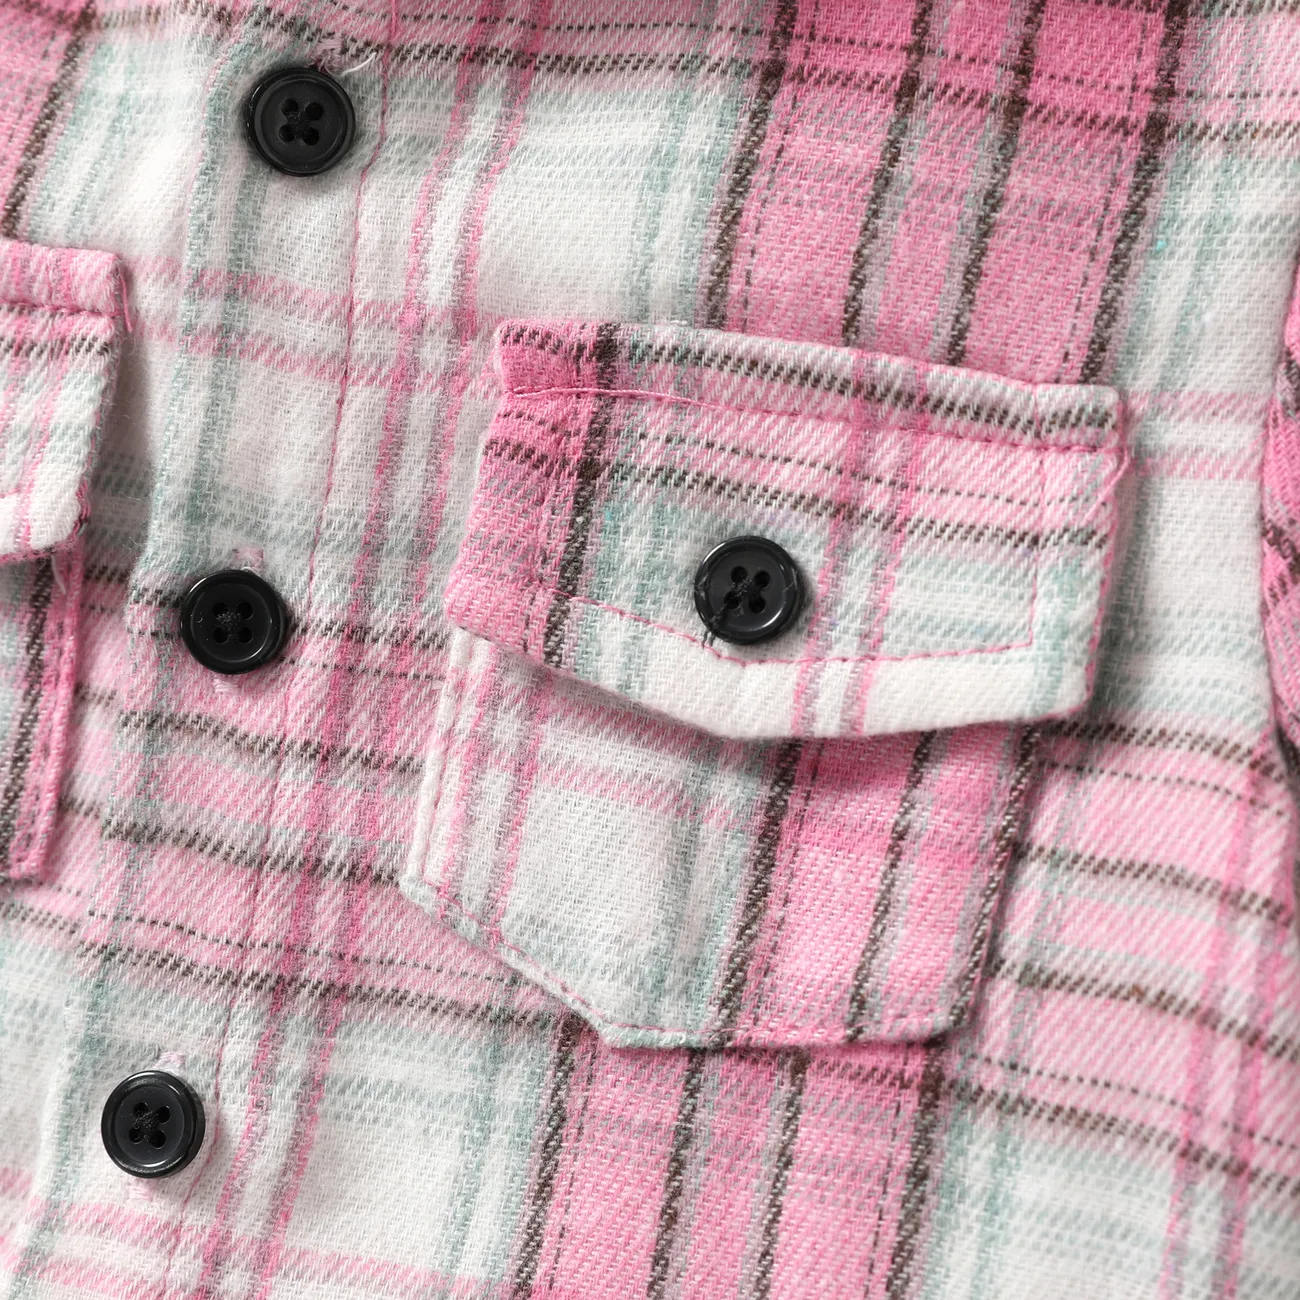 Bebé / niño pequeño 2 piezas de camisa con capucha con estampado a cuadros y conjunto de pantalones cortos Rosado big image 1